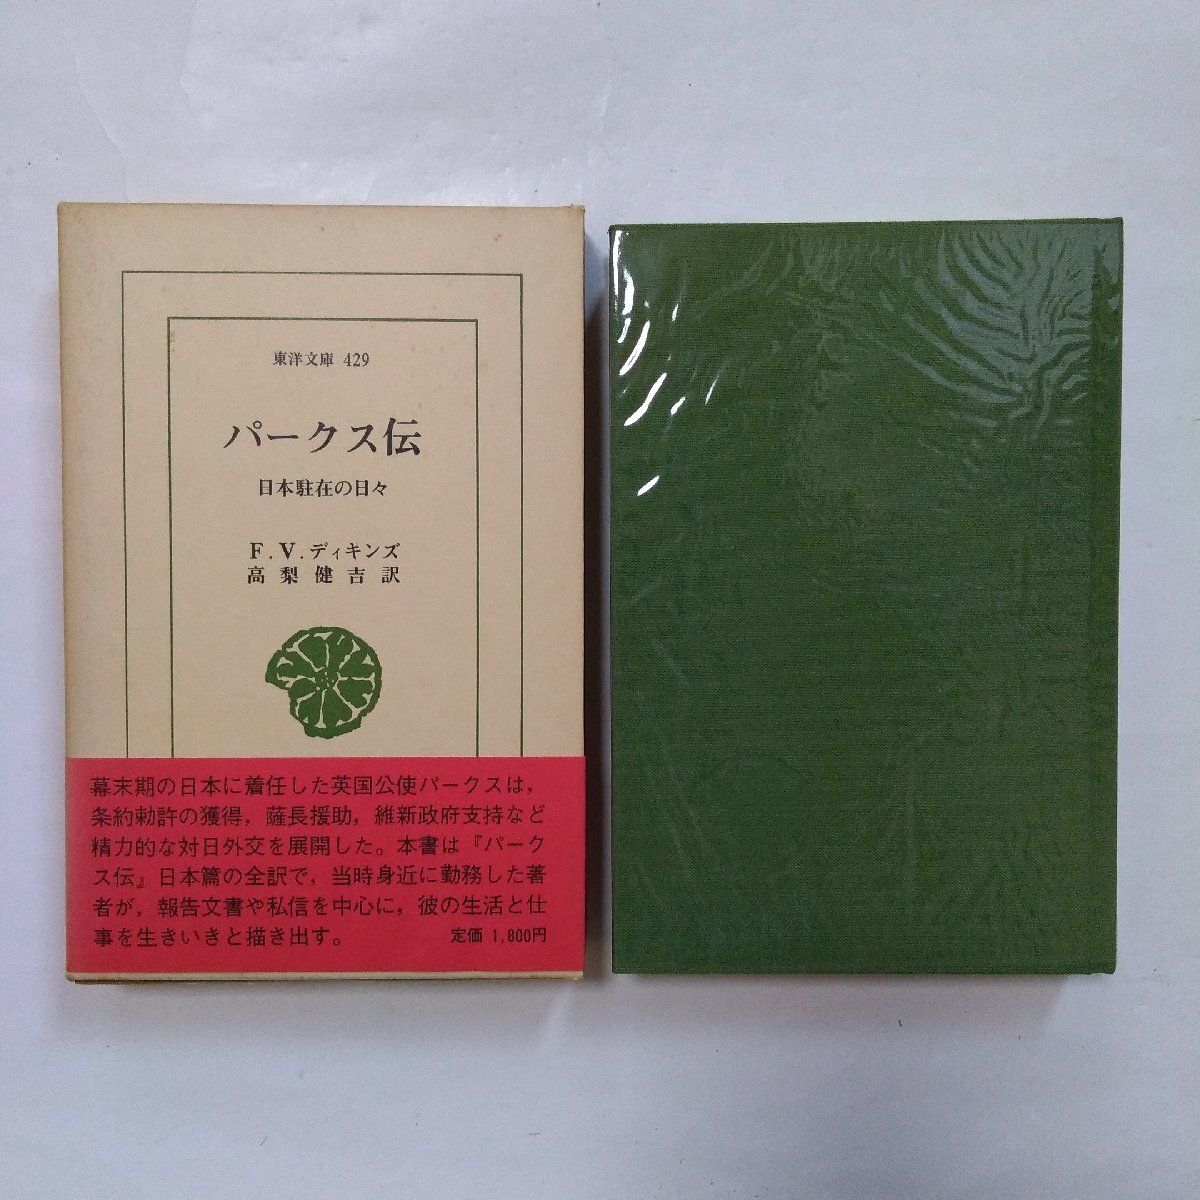 * park s. Япония ... ежедневно F.V.ti gold z высота груша .. перевод Восток библиотека 429 Heibonsha 1984 год первая версия 